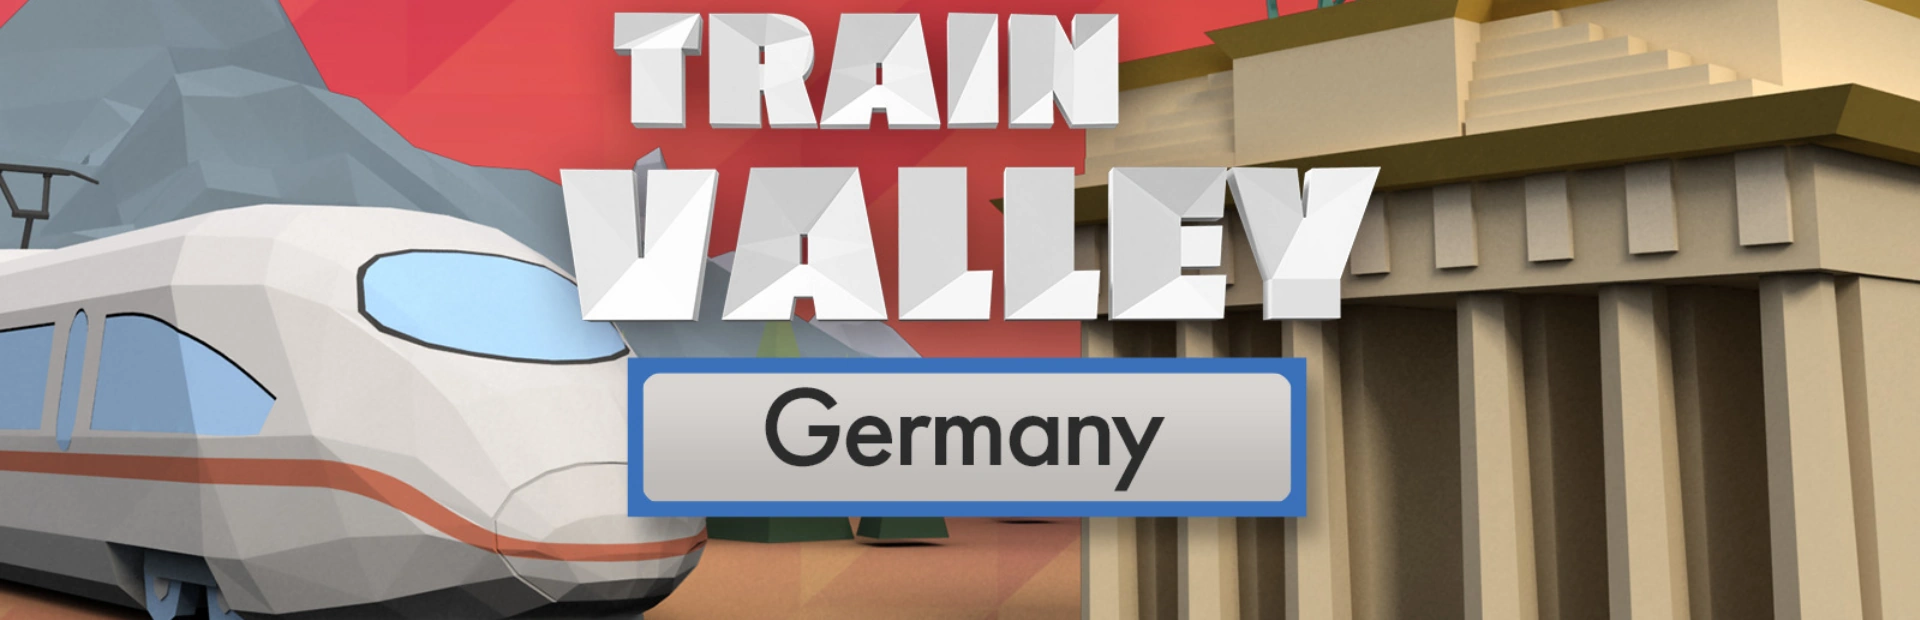 Train.Valley.banner3